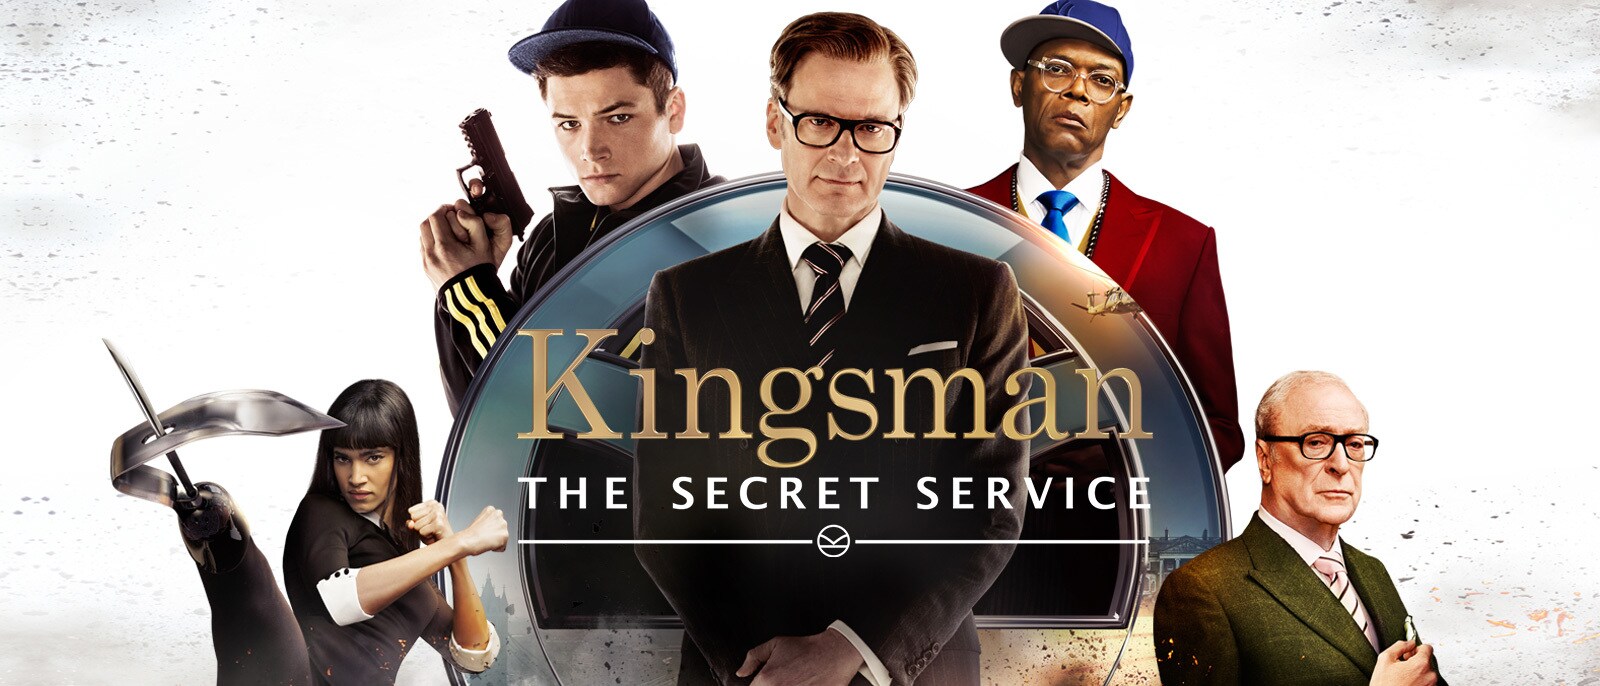 watch the kingsman 2 online free 123